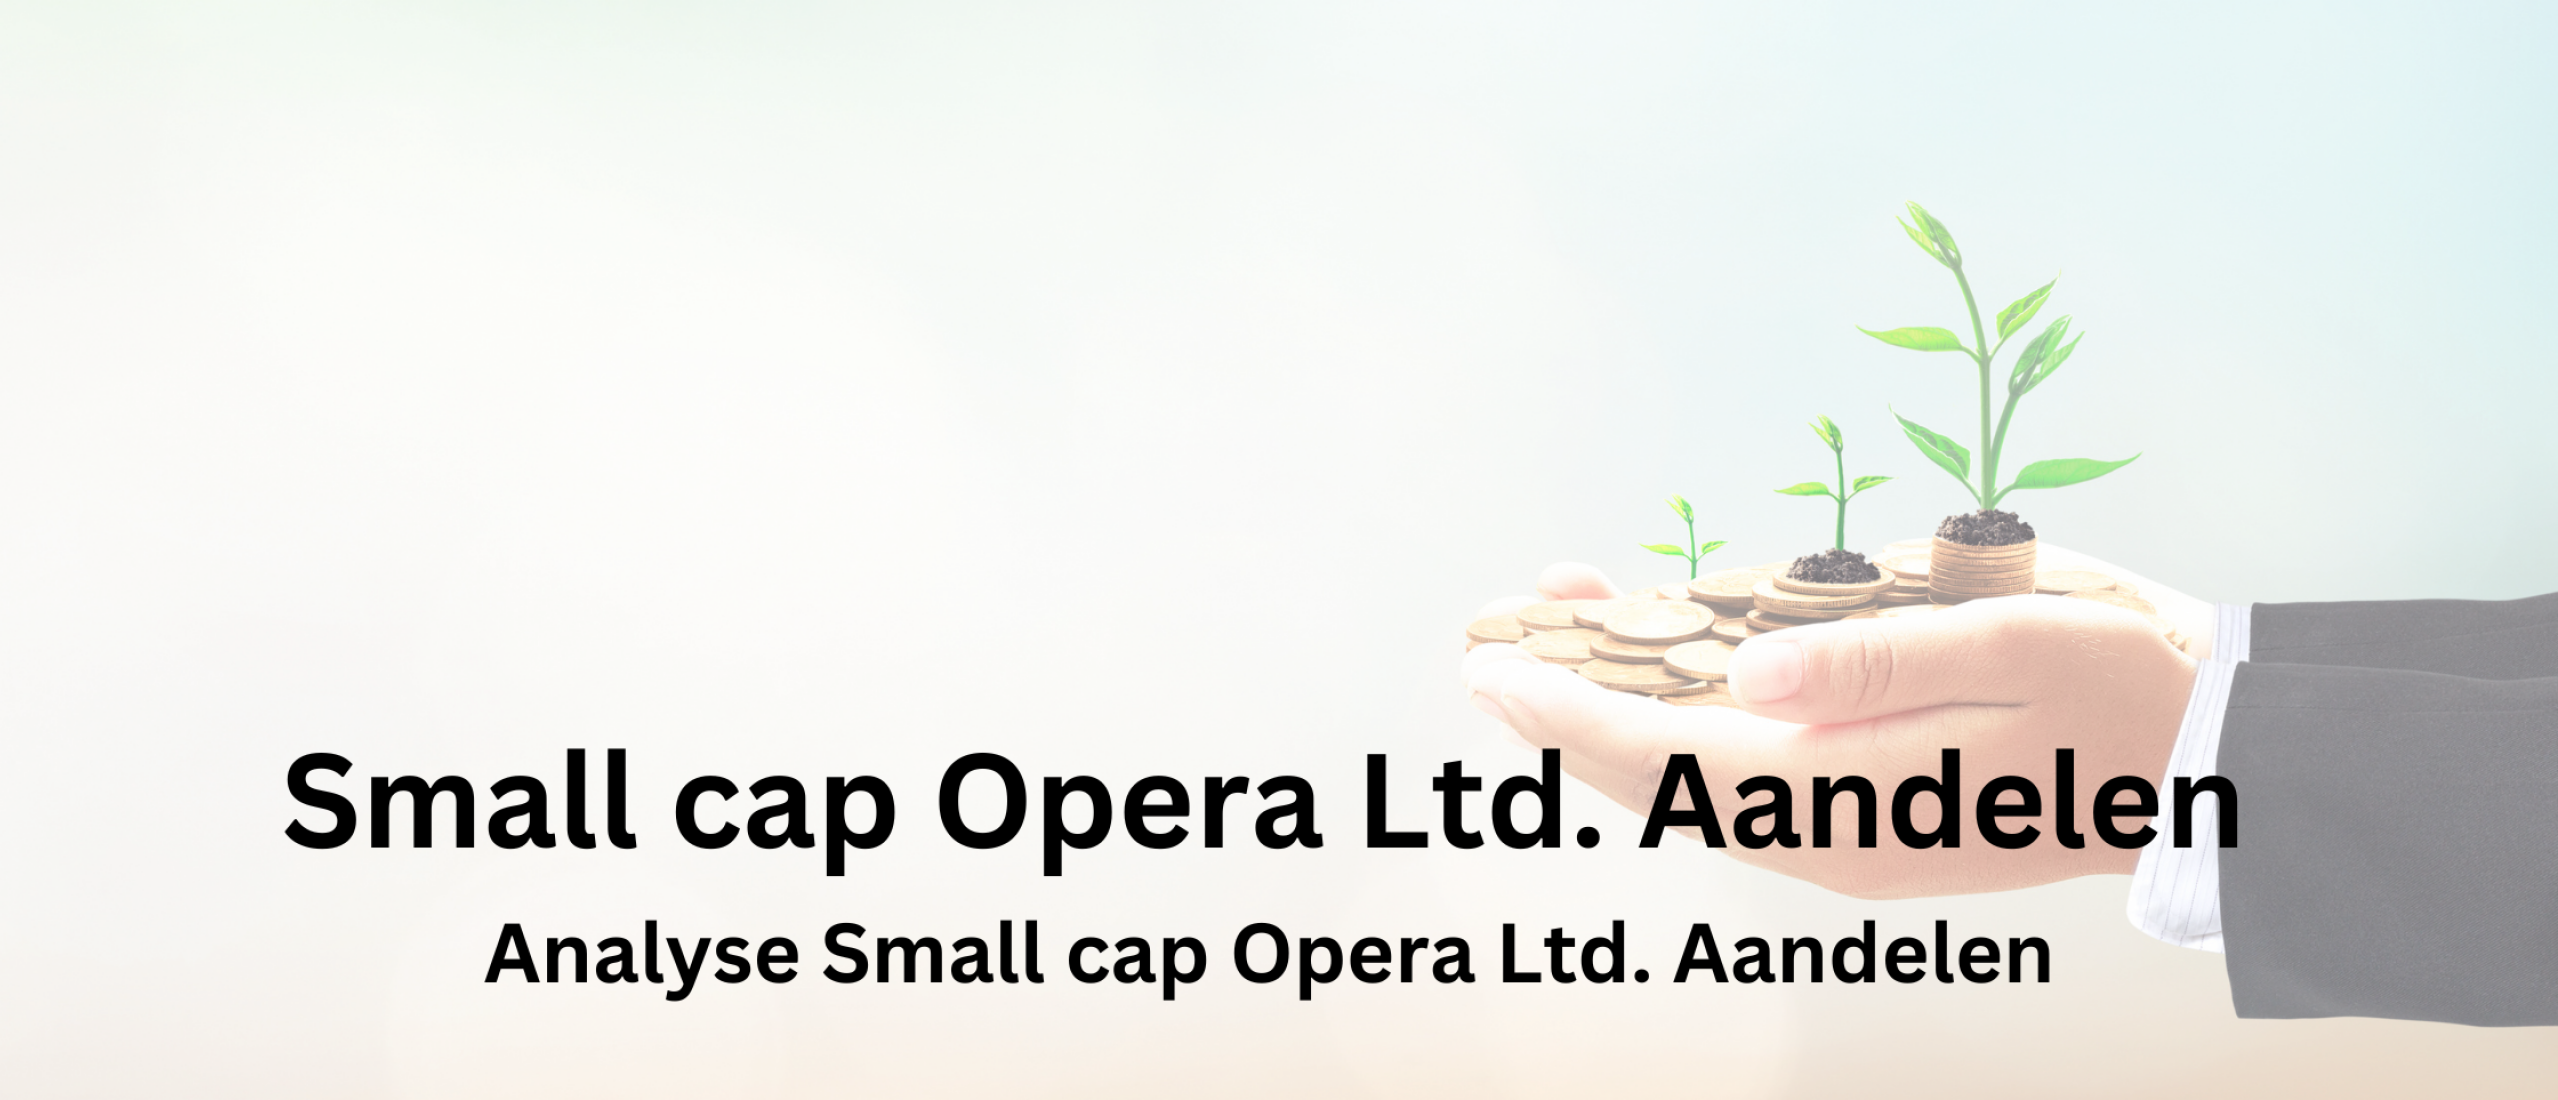 aandelen-kopen-small-cap-opera-ltd--aandelen-